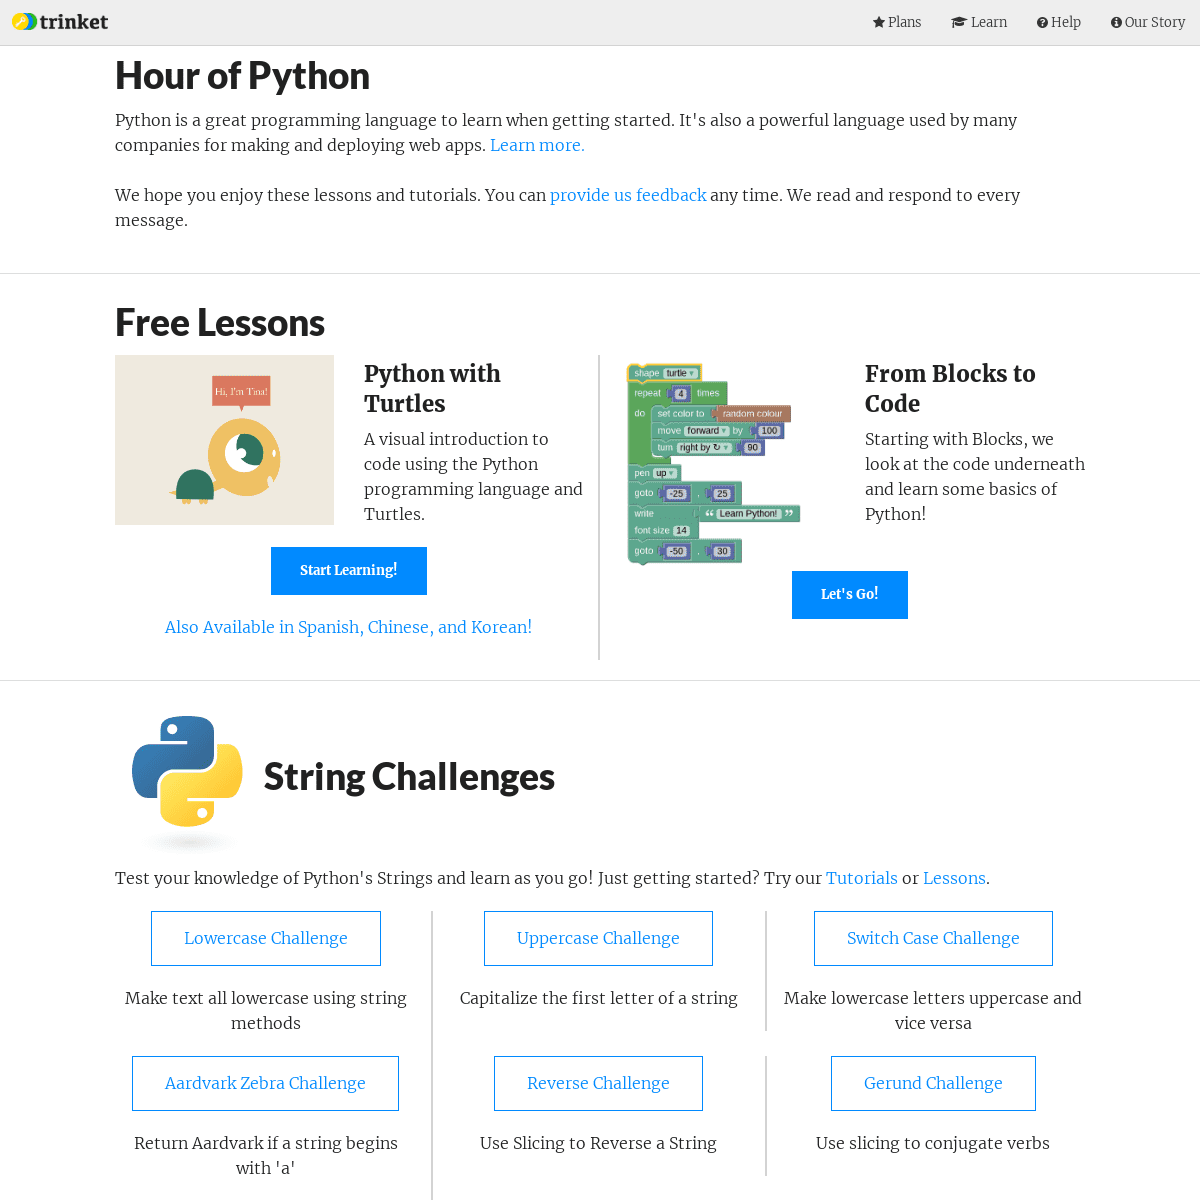 A complete backup of hourofpython.com